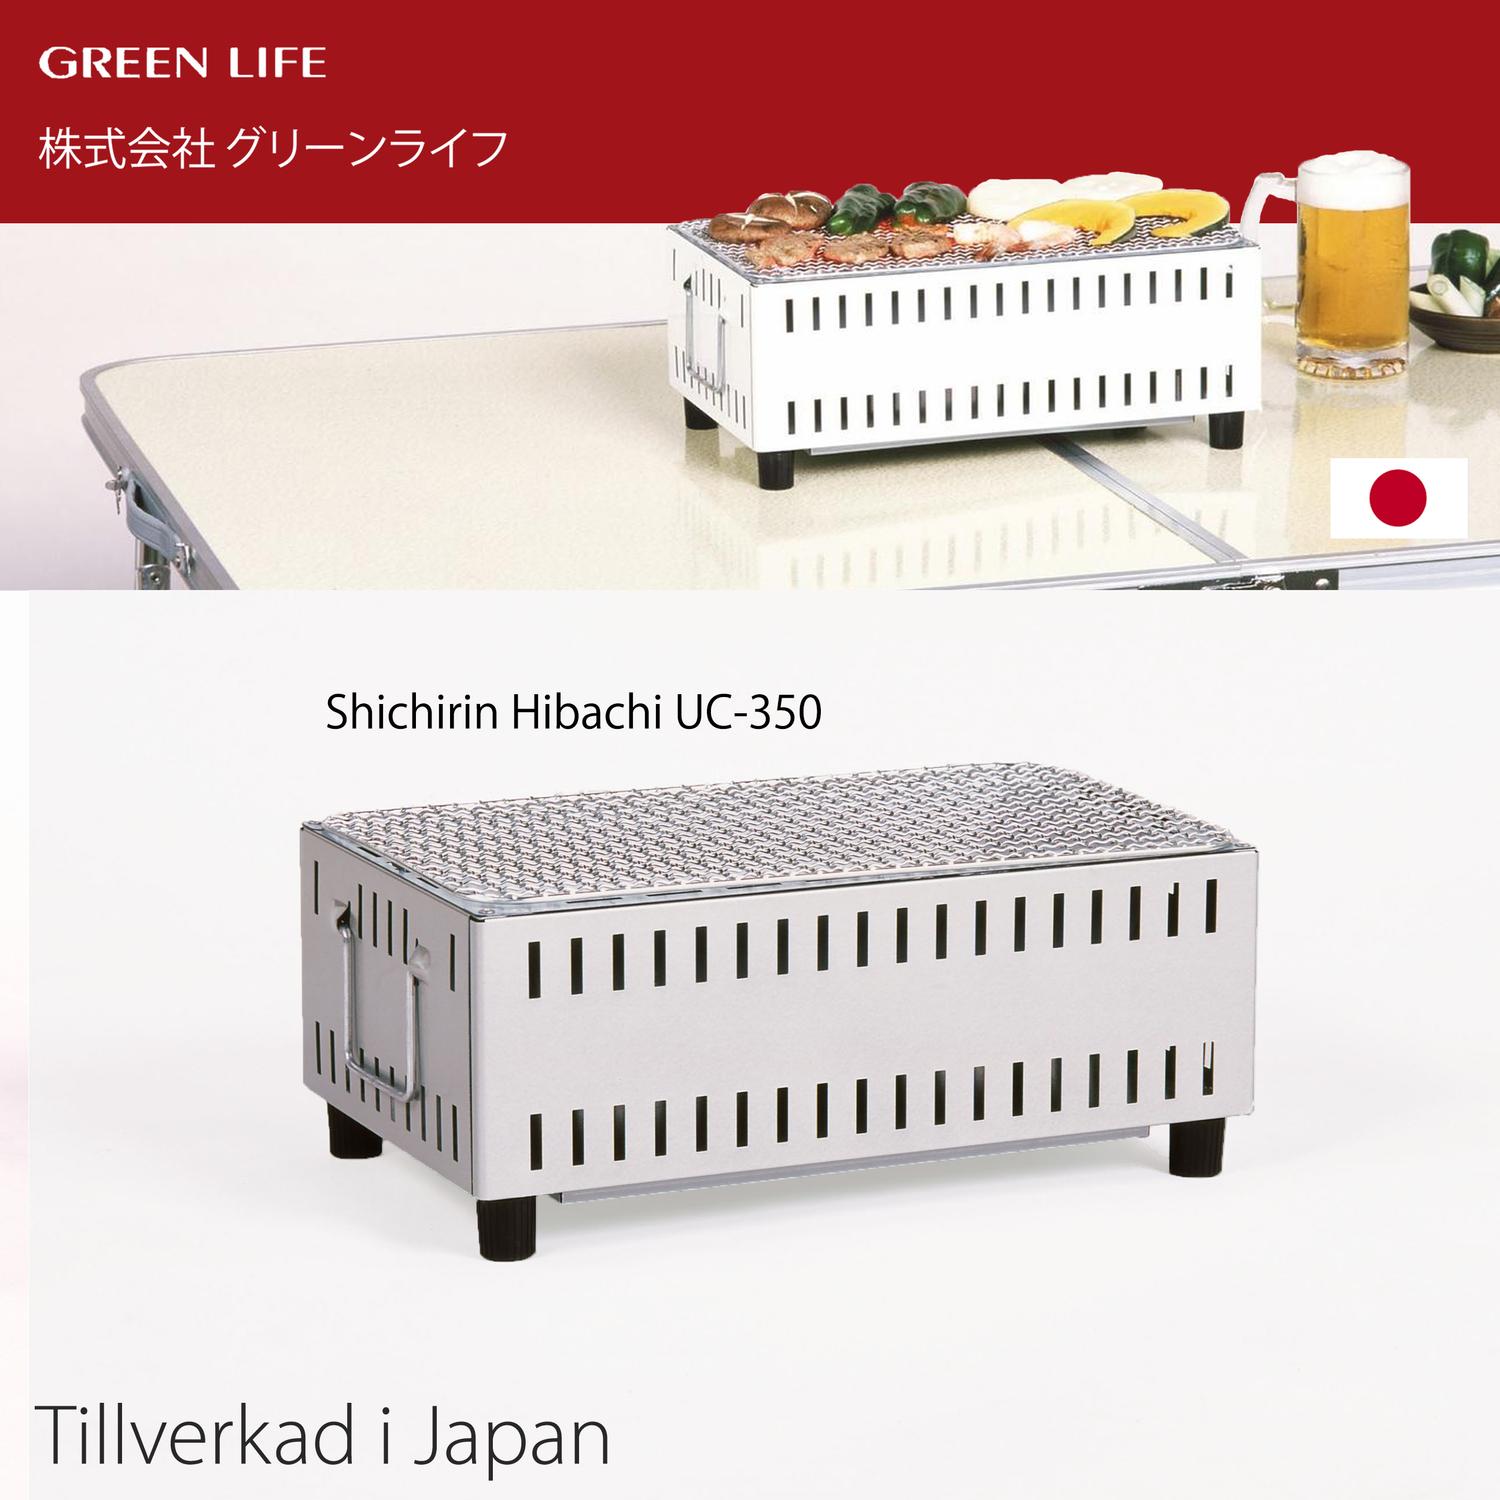 1606円 商品追加値下げ在庫復活 グリーンライフ GREEN LIFE コンパクト卓上シチリン UC-350W